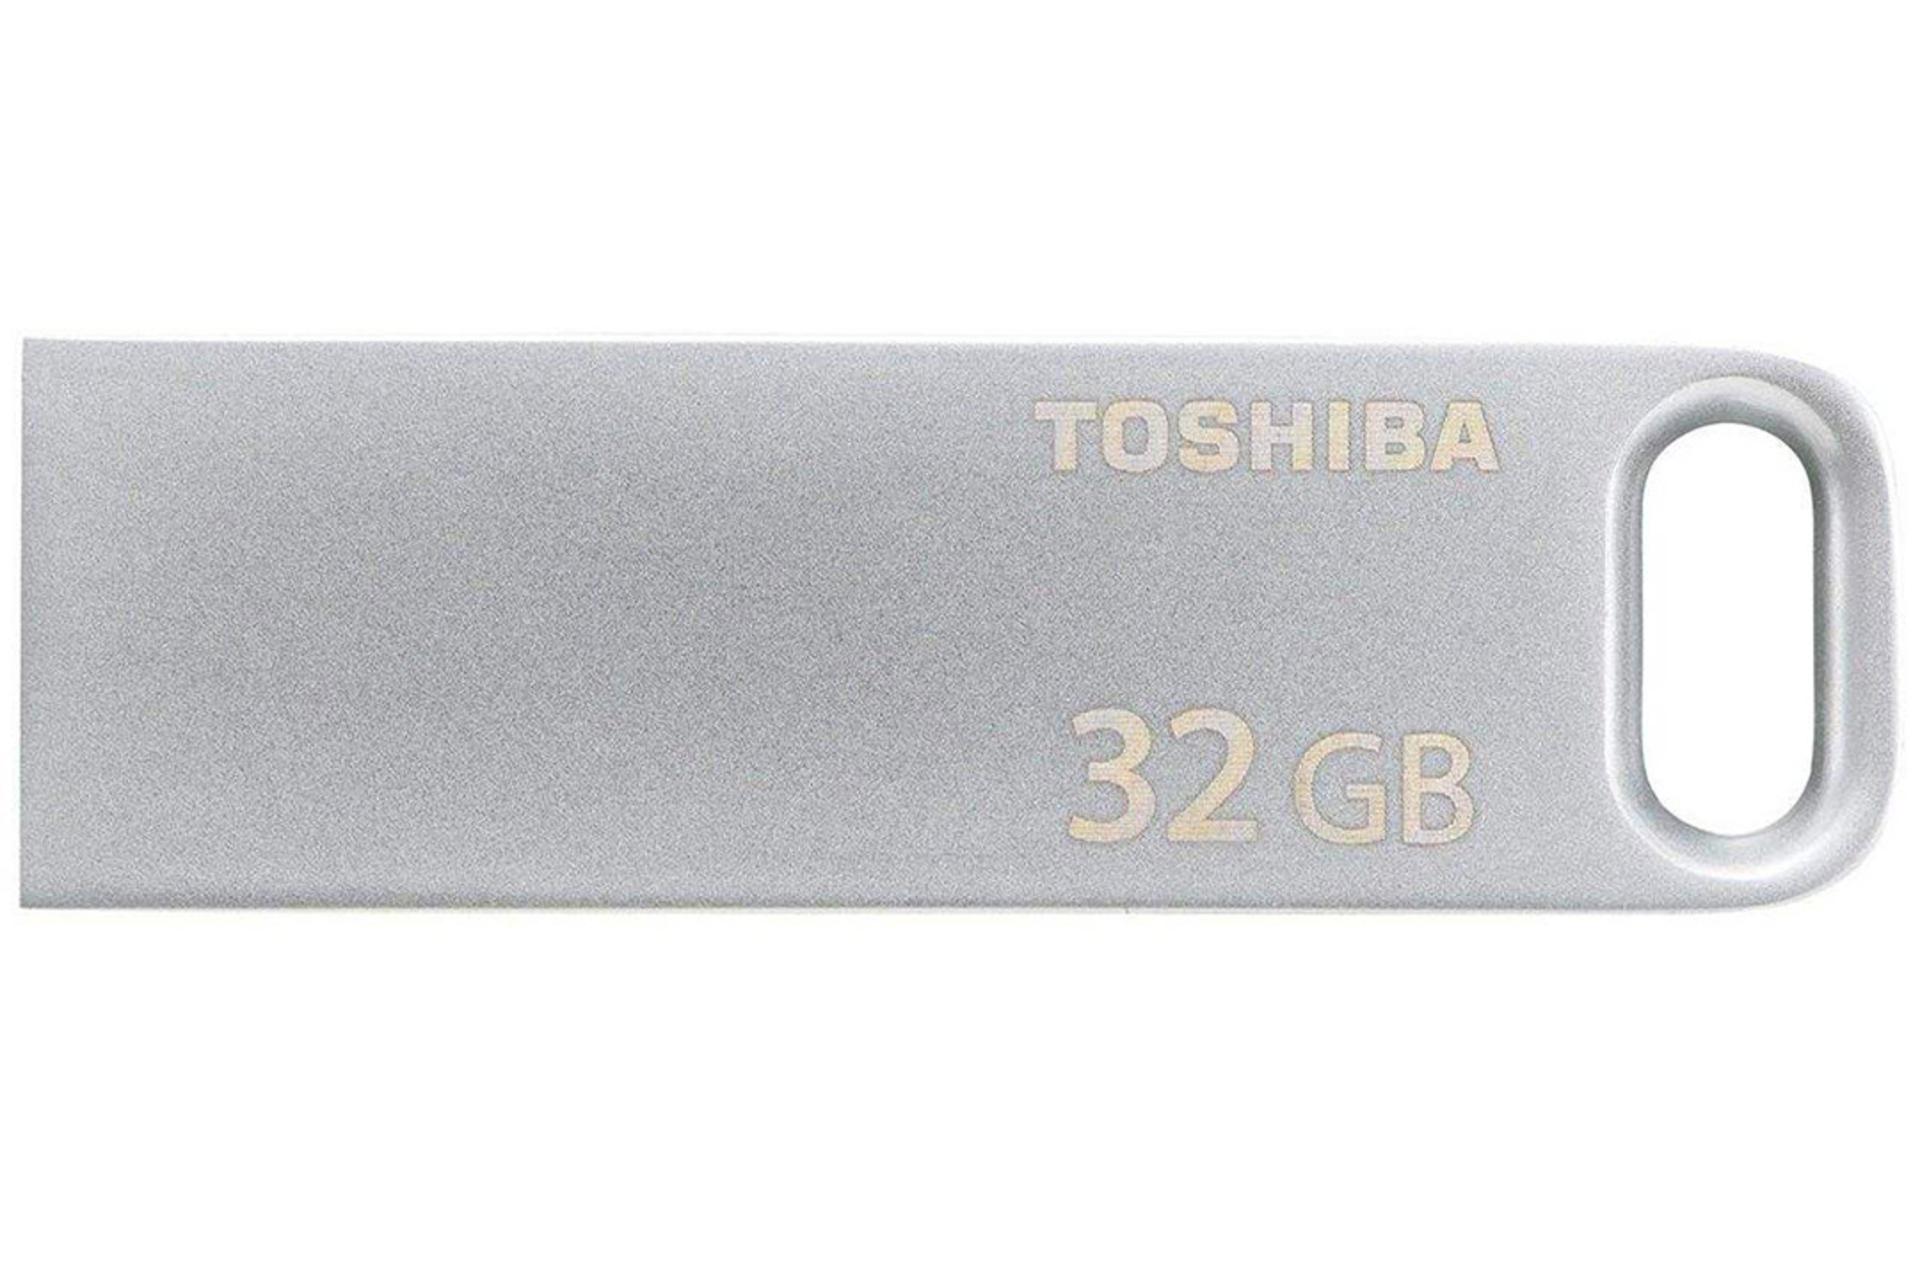 Toshiba TransMemory U363 32GB